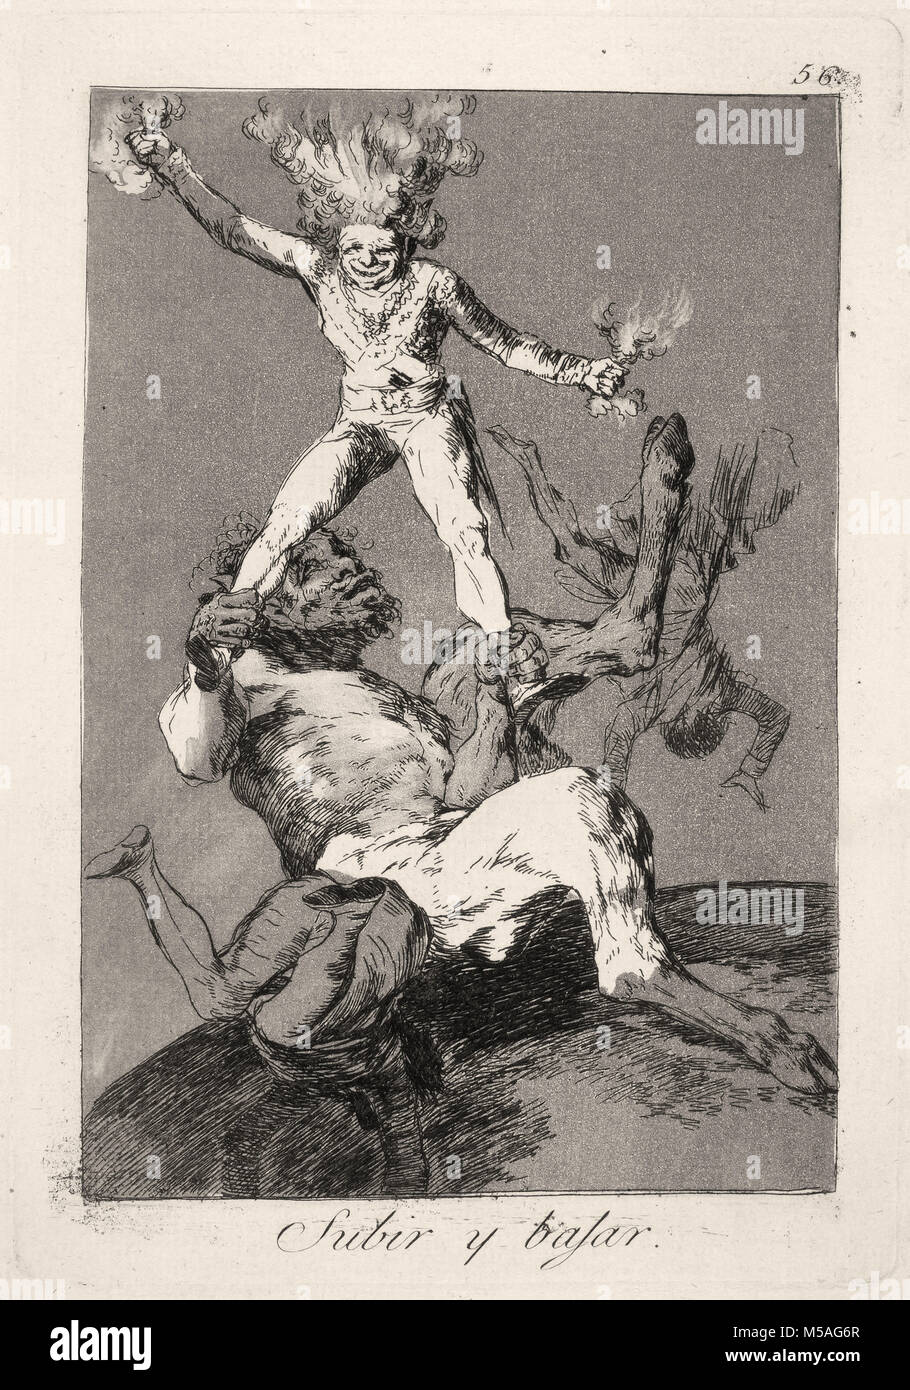 Francisco de Goya: Los Caprichos - nº 56 - Subir y bajar Foto de stock